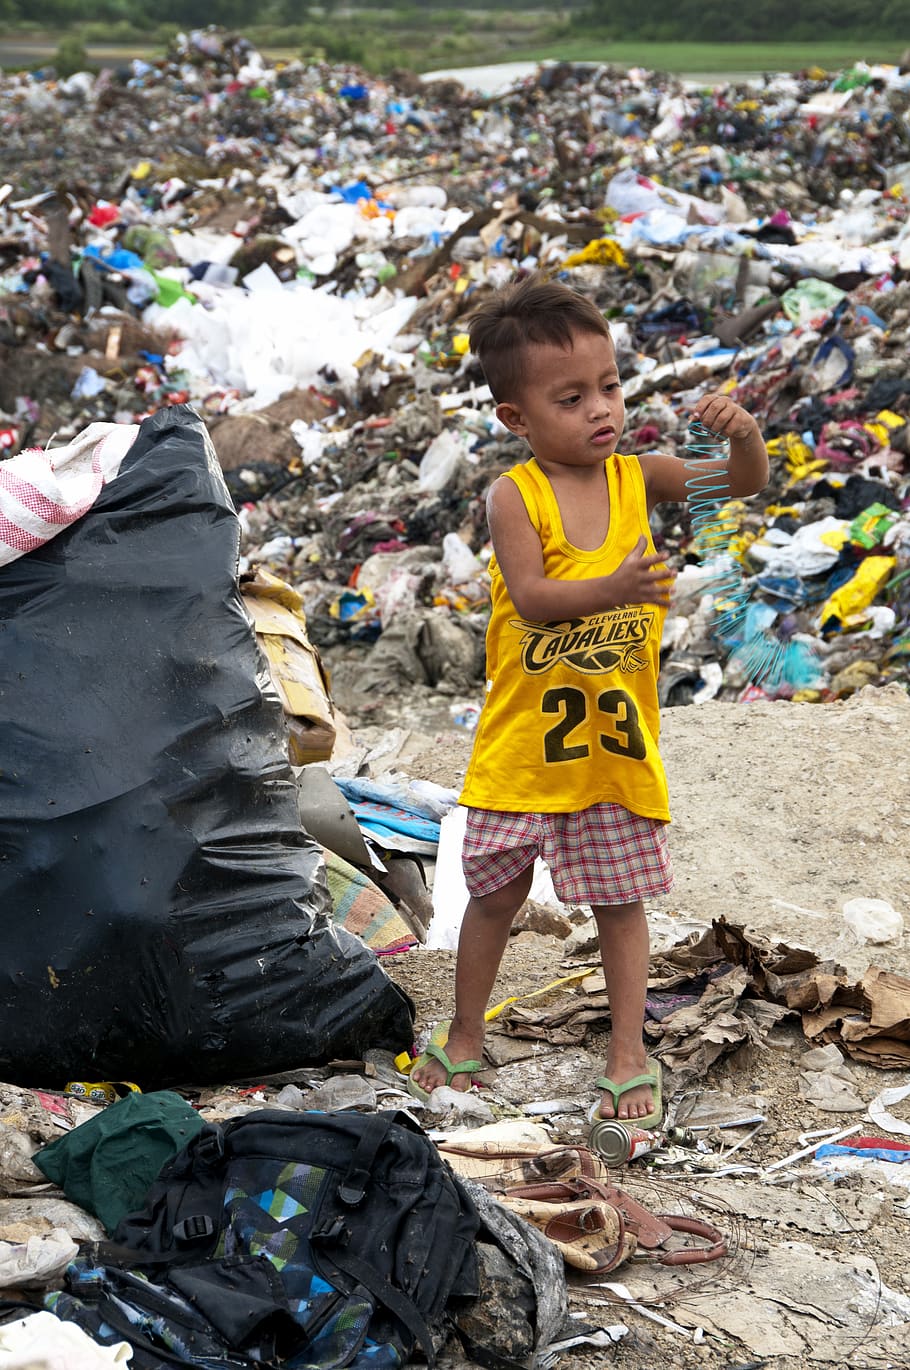 lixo, plástico, filipinas, cebu, pobreza, criança, brincar, reciclar, coleta de lixo, lixo plástico